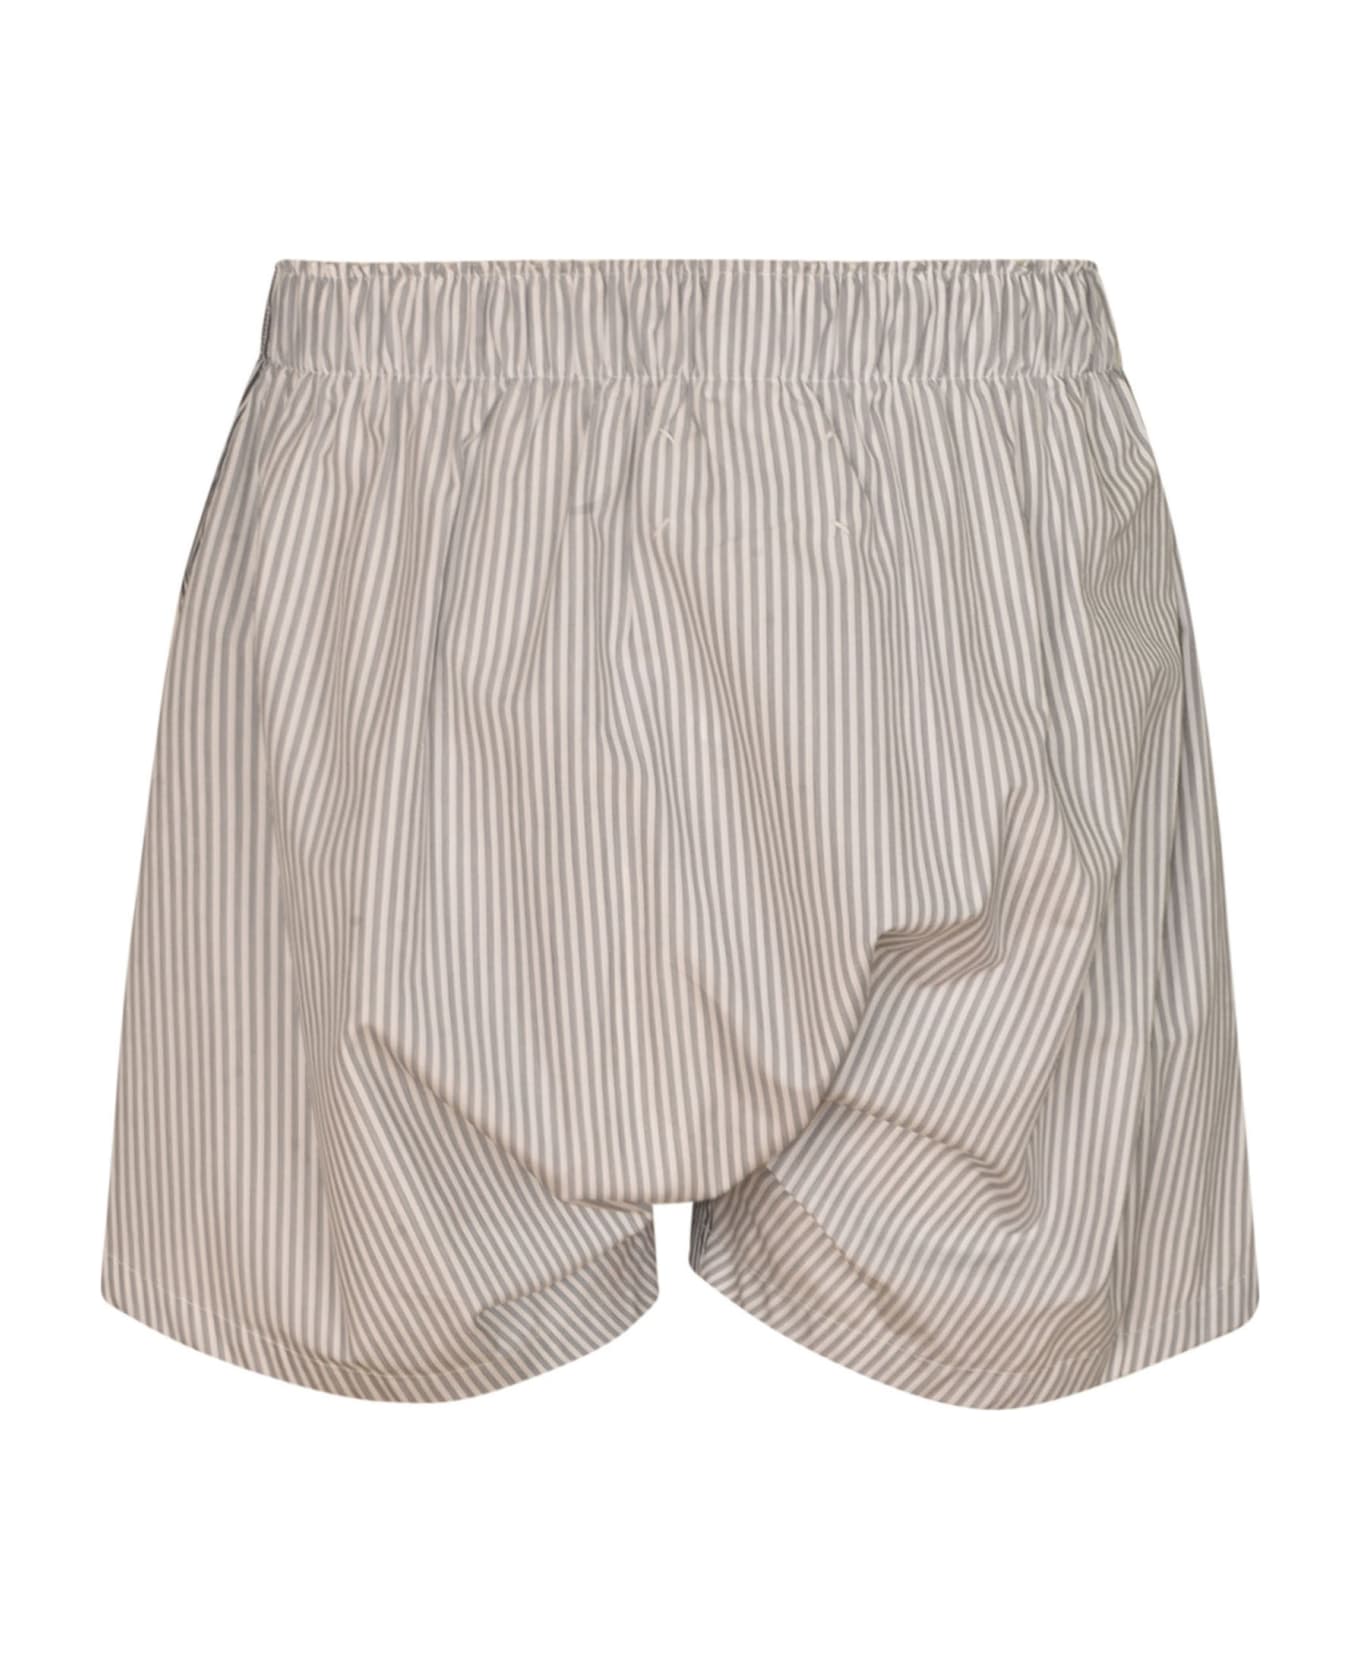 Maison Margiela Stripe Shorts - Black/White ショートパンツ